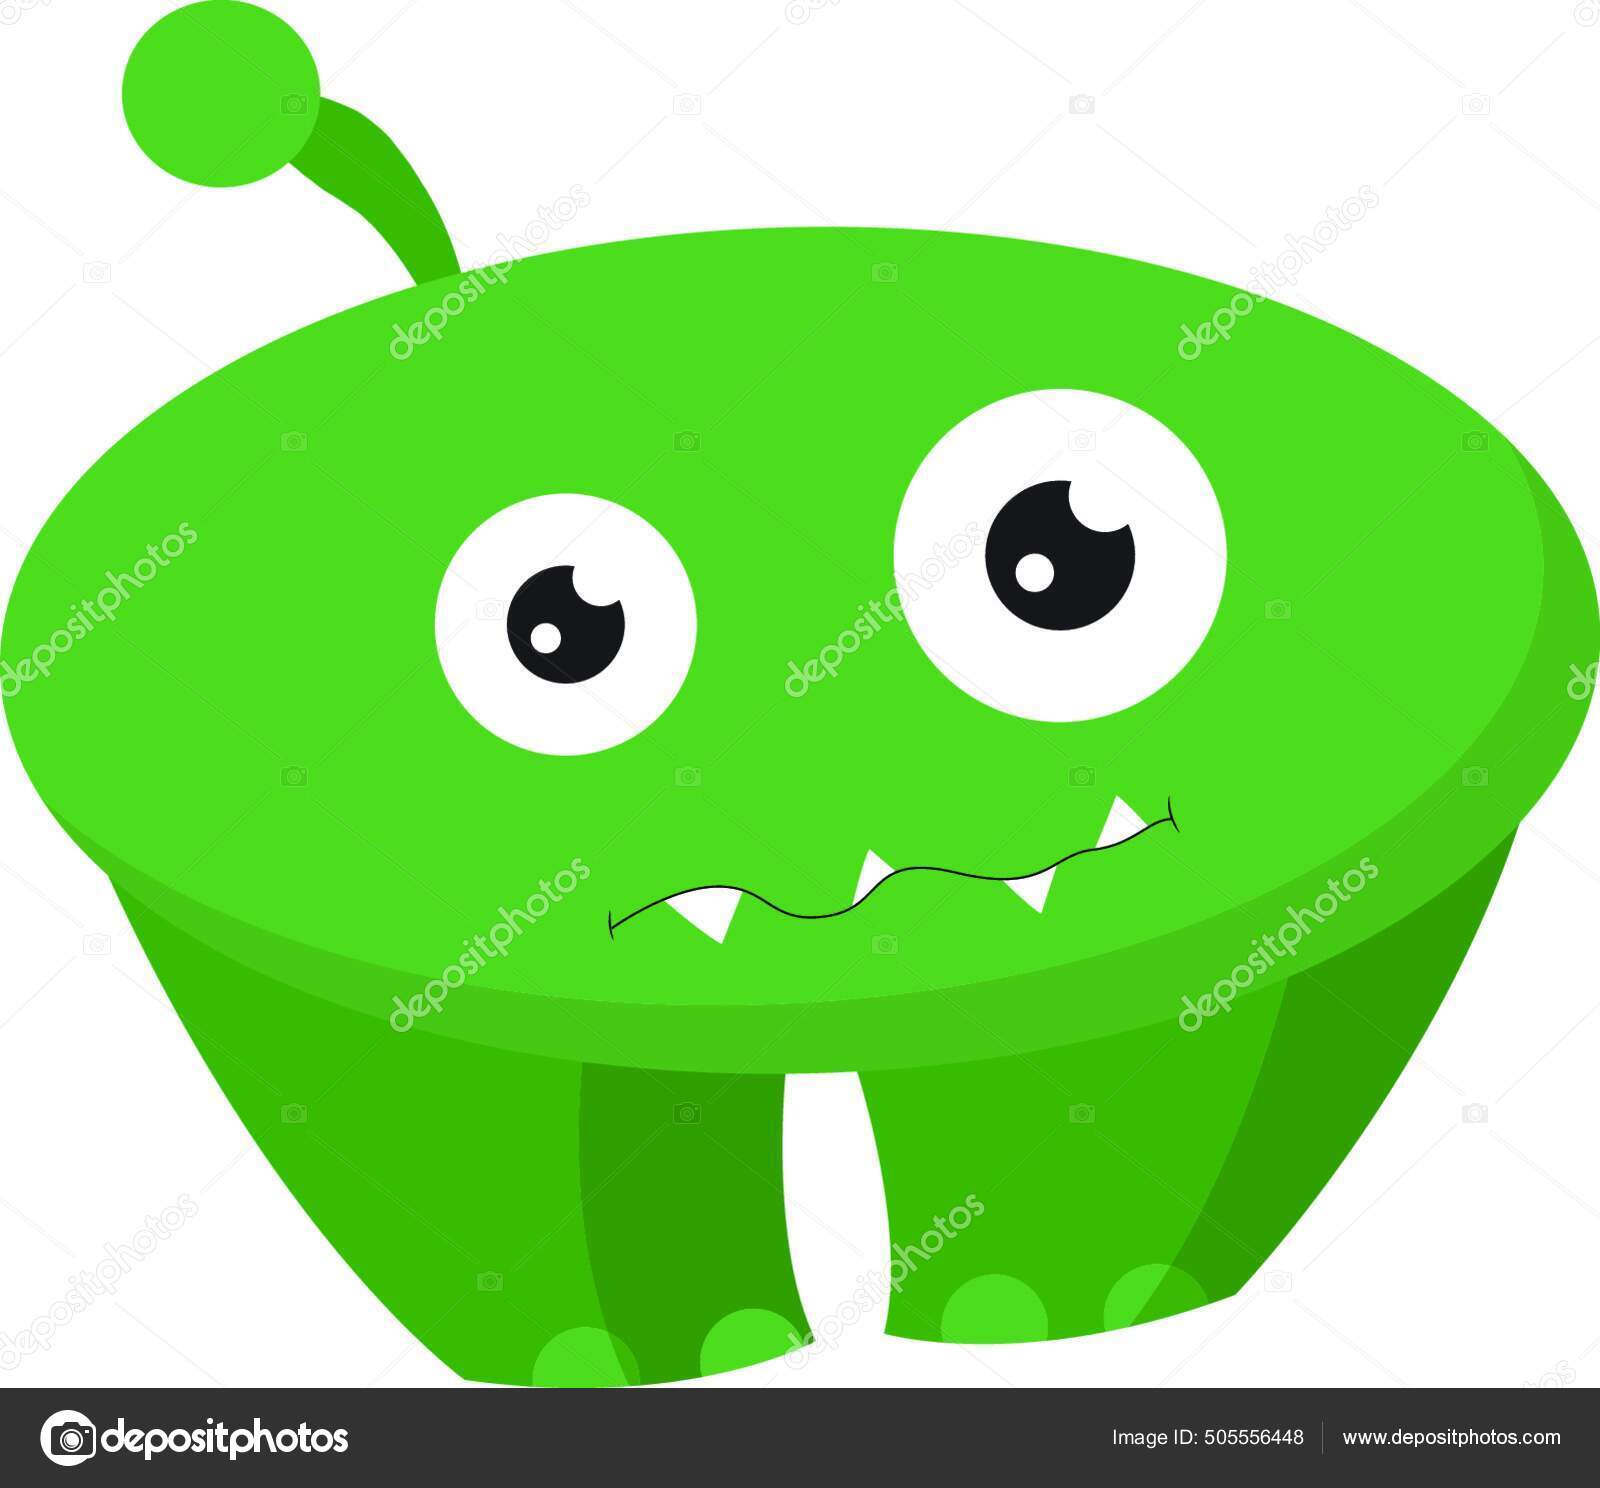 Monstro verde fofo fofo dos desenhos animados lambendo os olhos